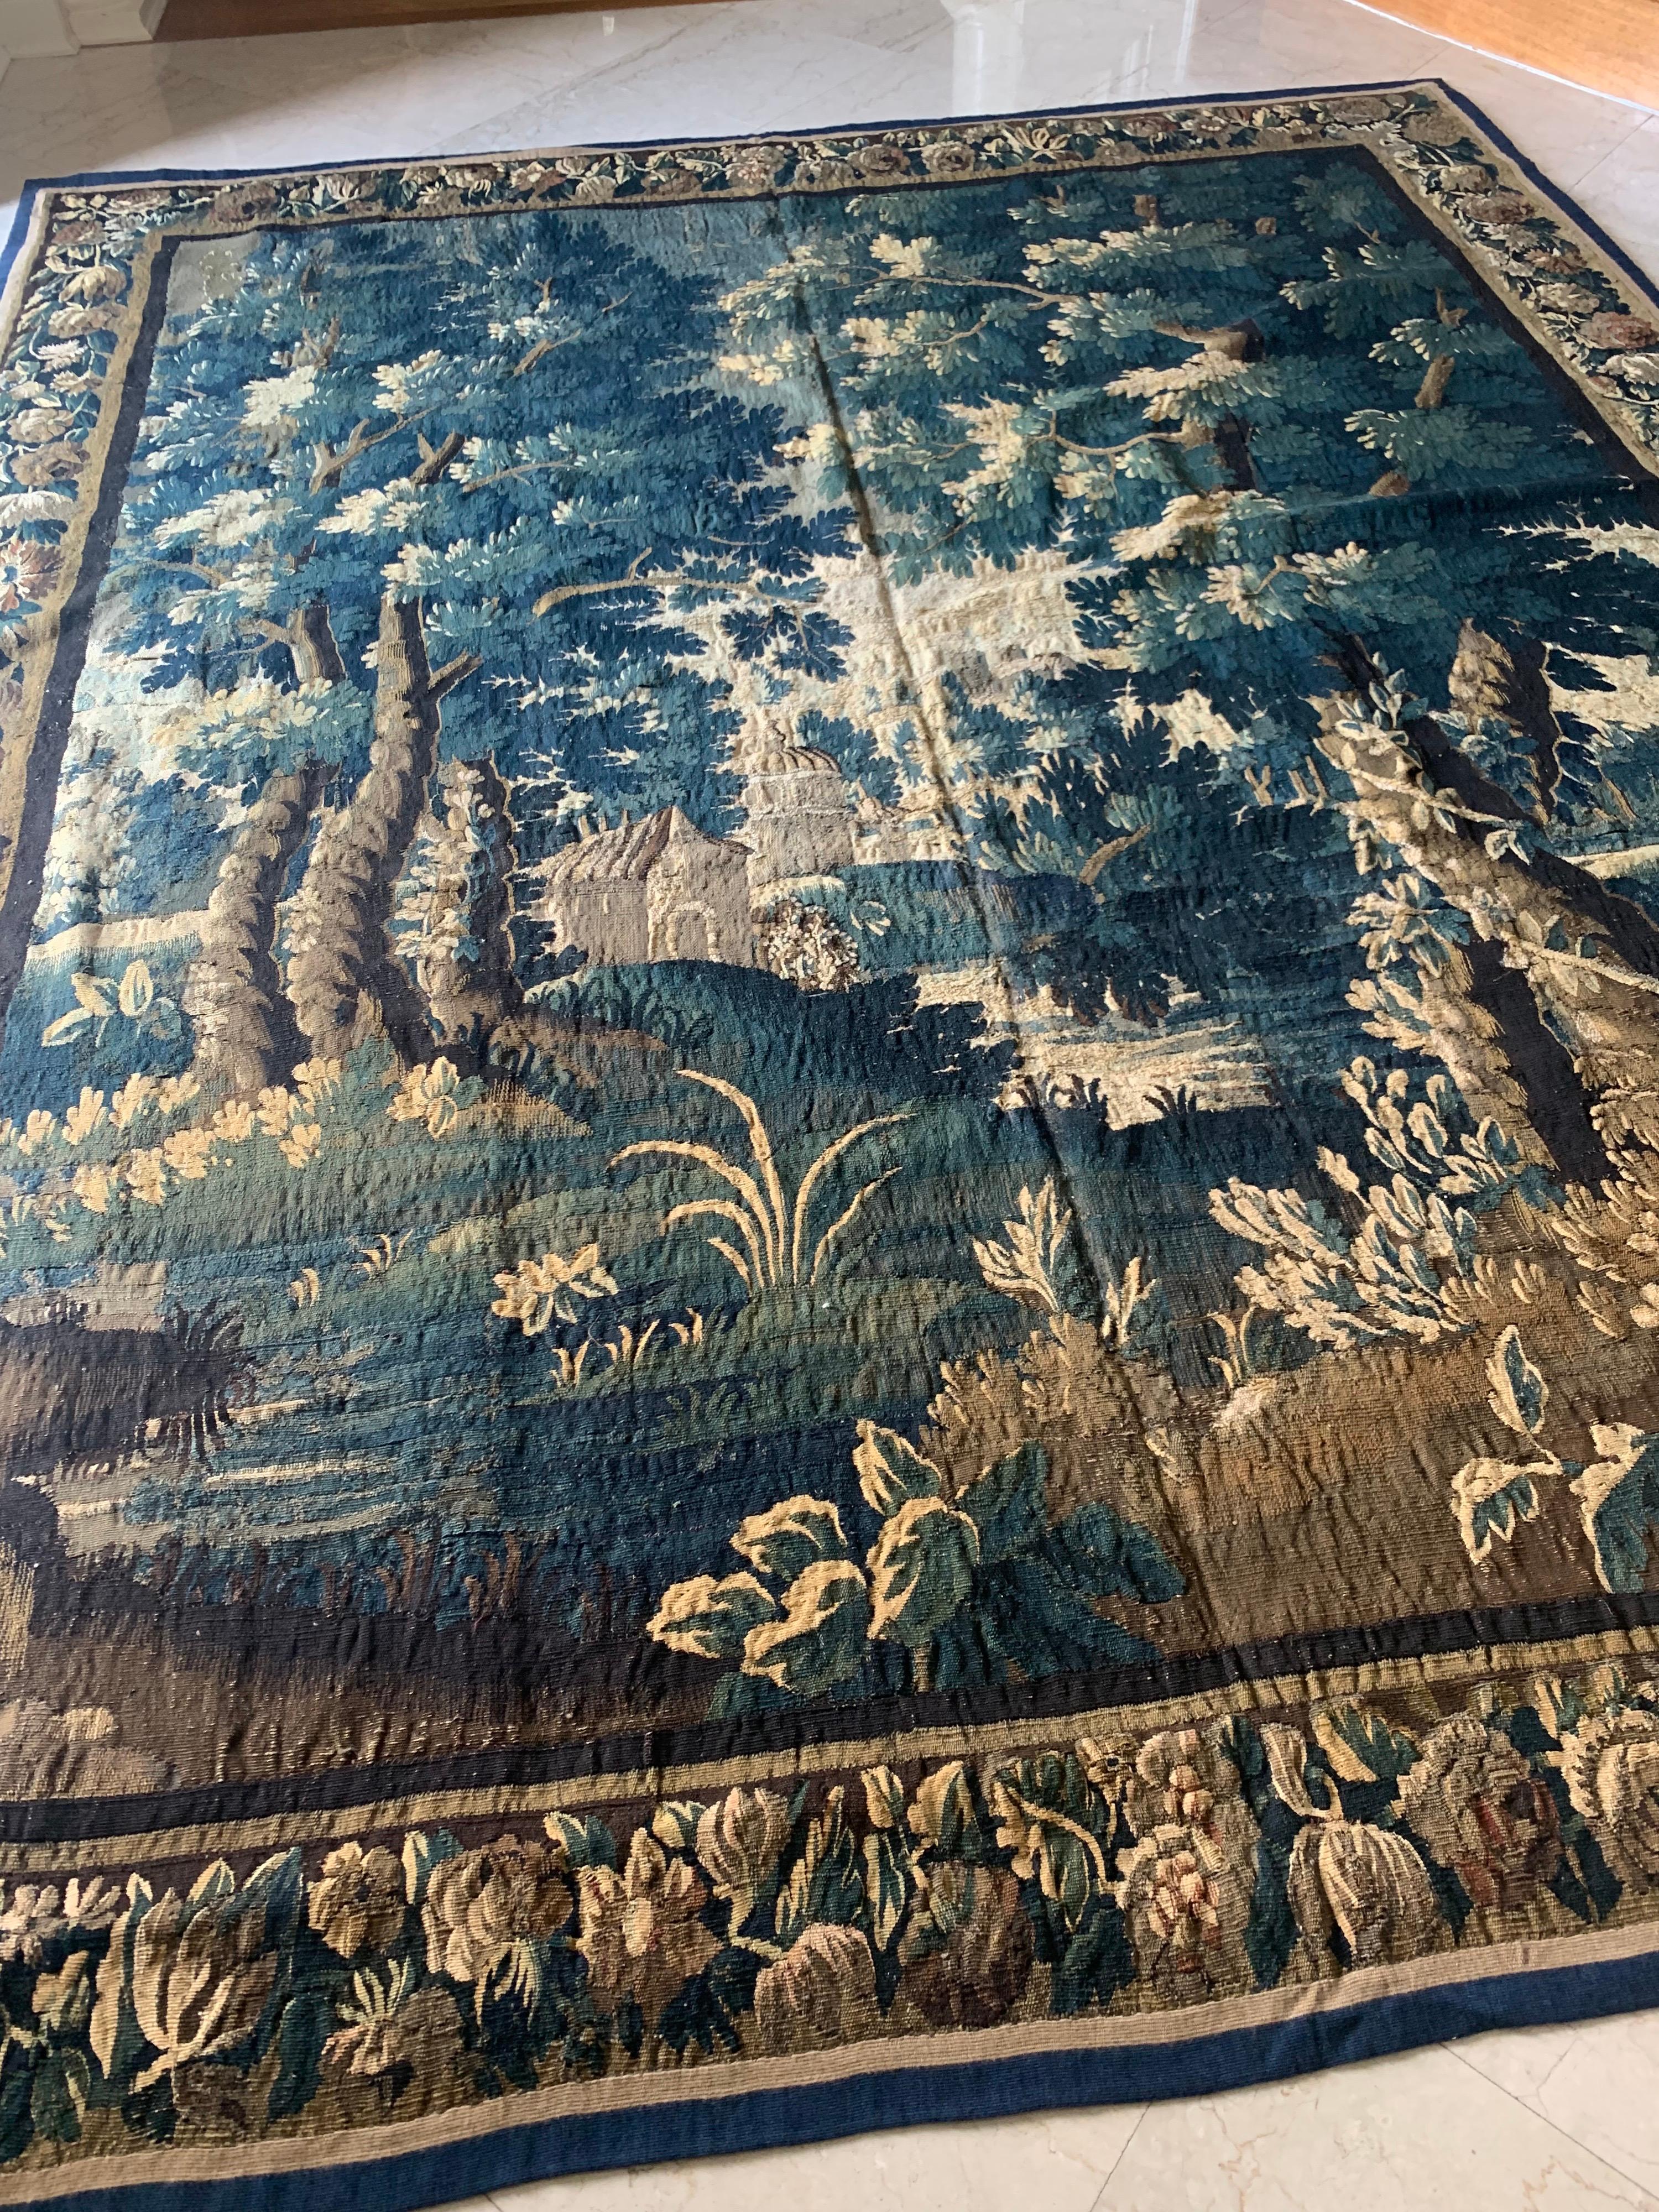 Dies ist eine herrliche antike quadratische 17. Jahrhundert flämischen Verdure Landschaft Wandteppich ohne Figuren in einer schönen und reichen Sommer-Szene einer Landschaft mit üppigen Bäumen und Vegetation und Häuser in der Ferne. Die Umrandung